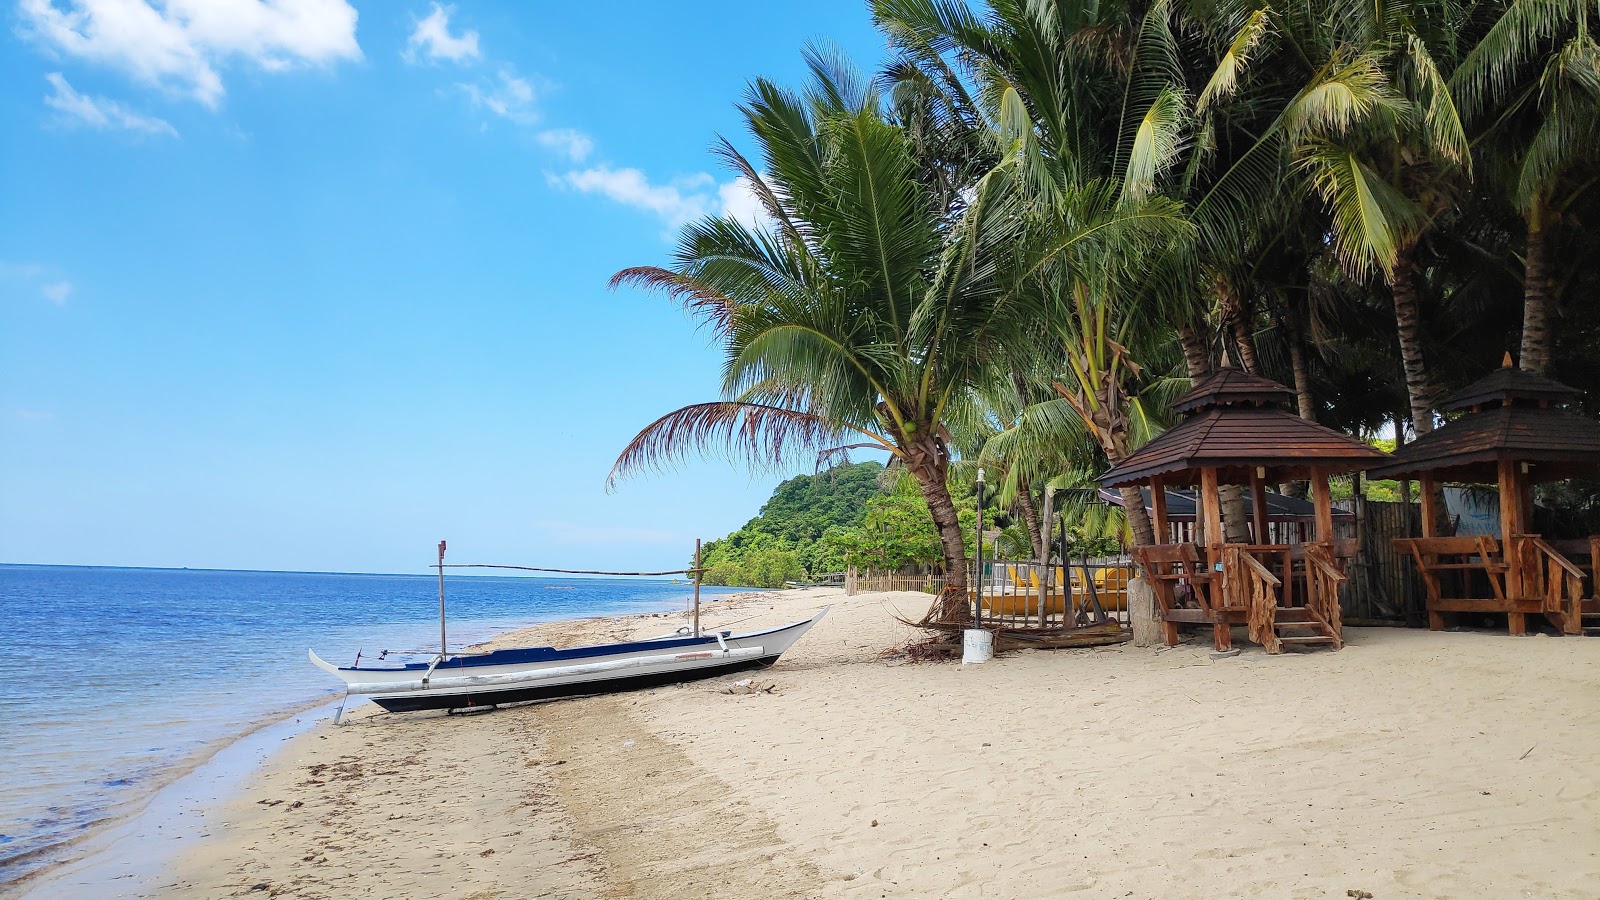 Photo de Lian batangas beach - endroit populaire parmi les connaisseurs de la détente